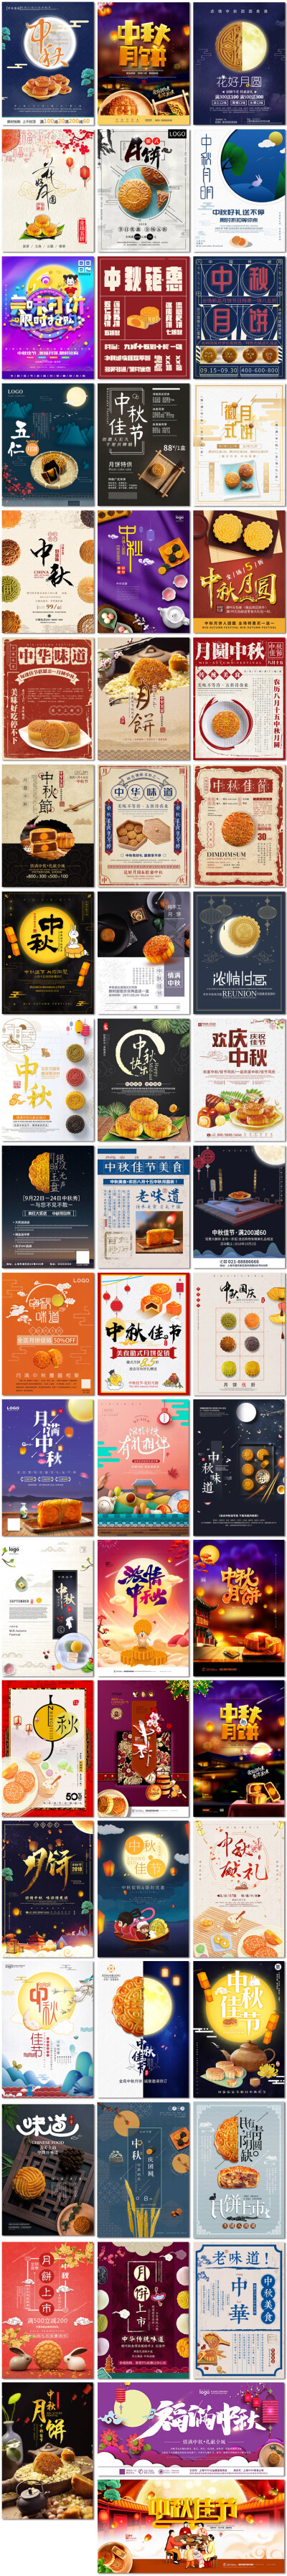 徽式月饼电商优惠活动月圆中秋中国传统节日海报psd模板素材设计